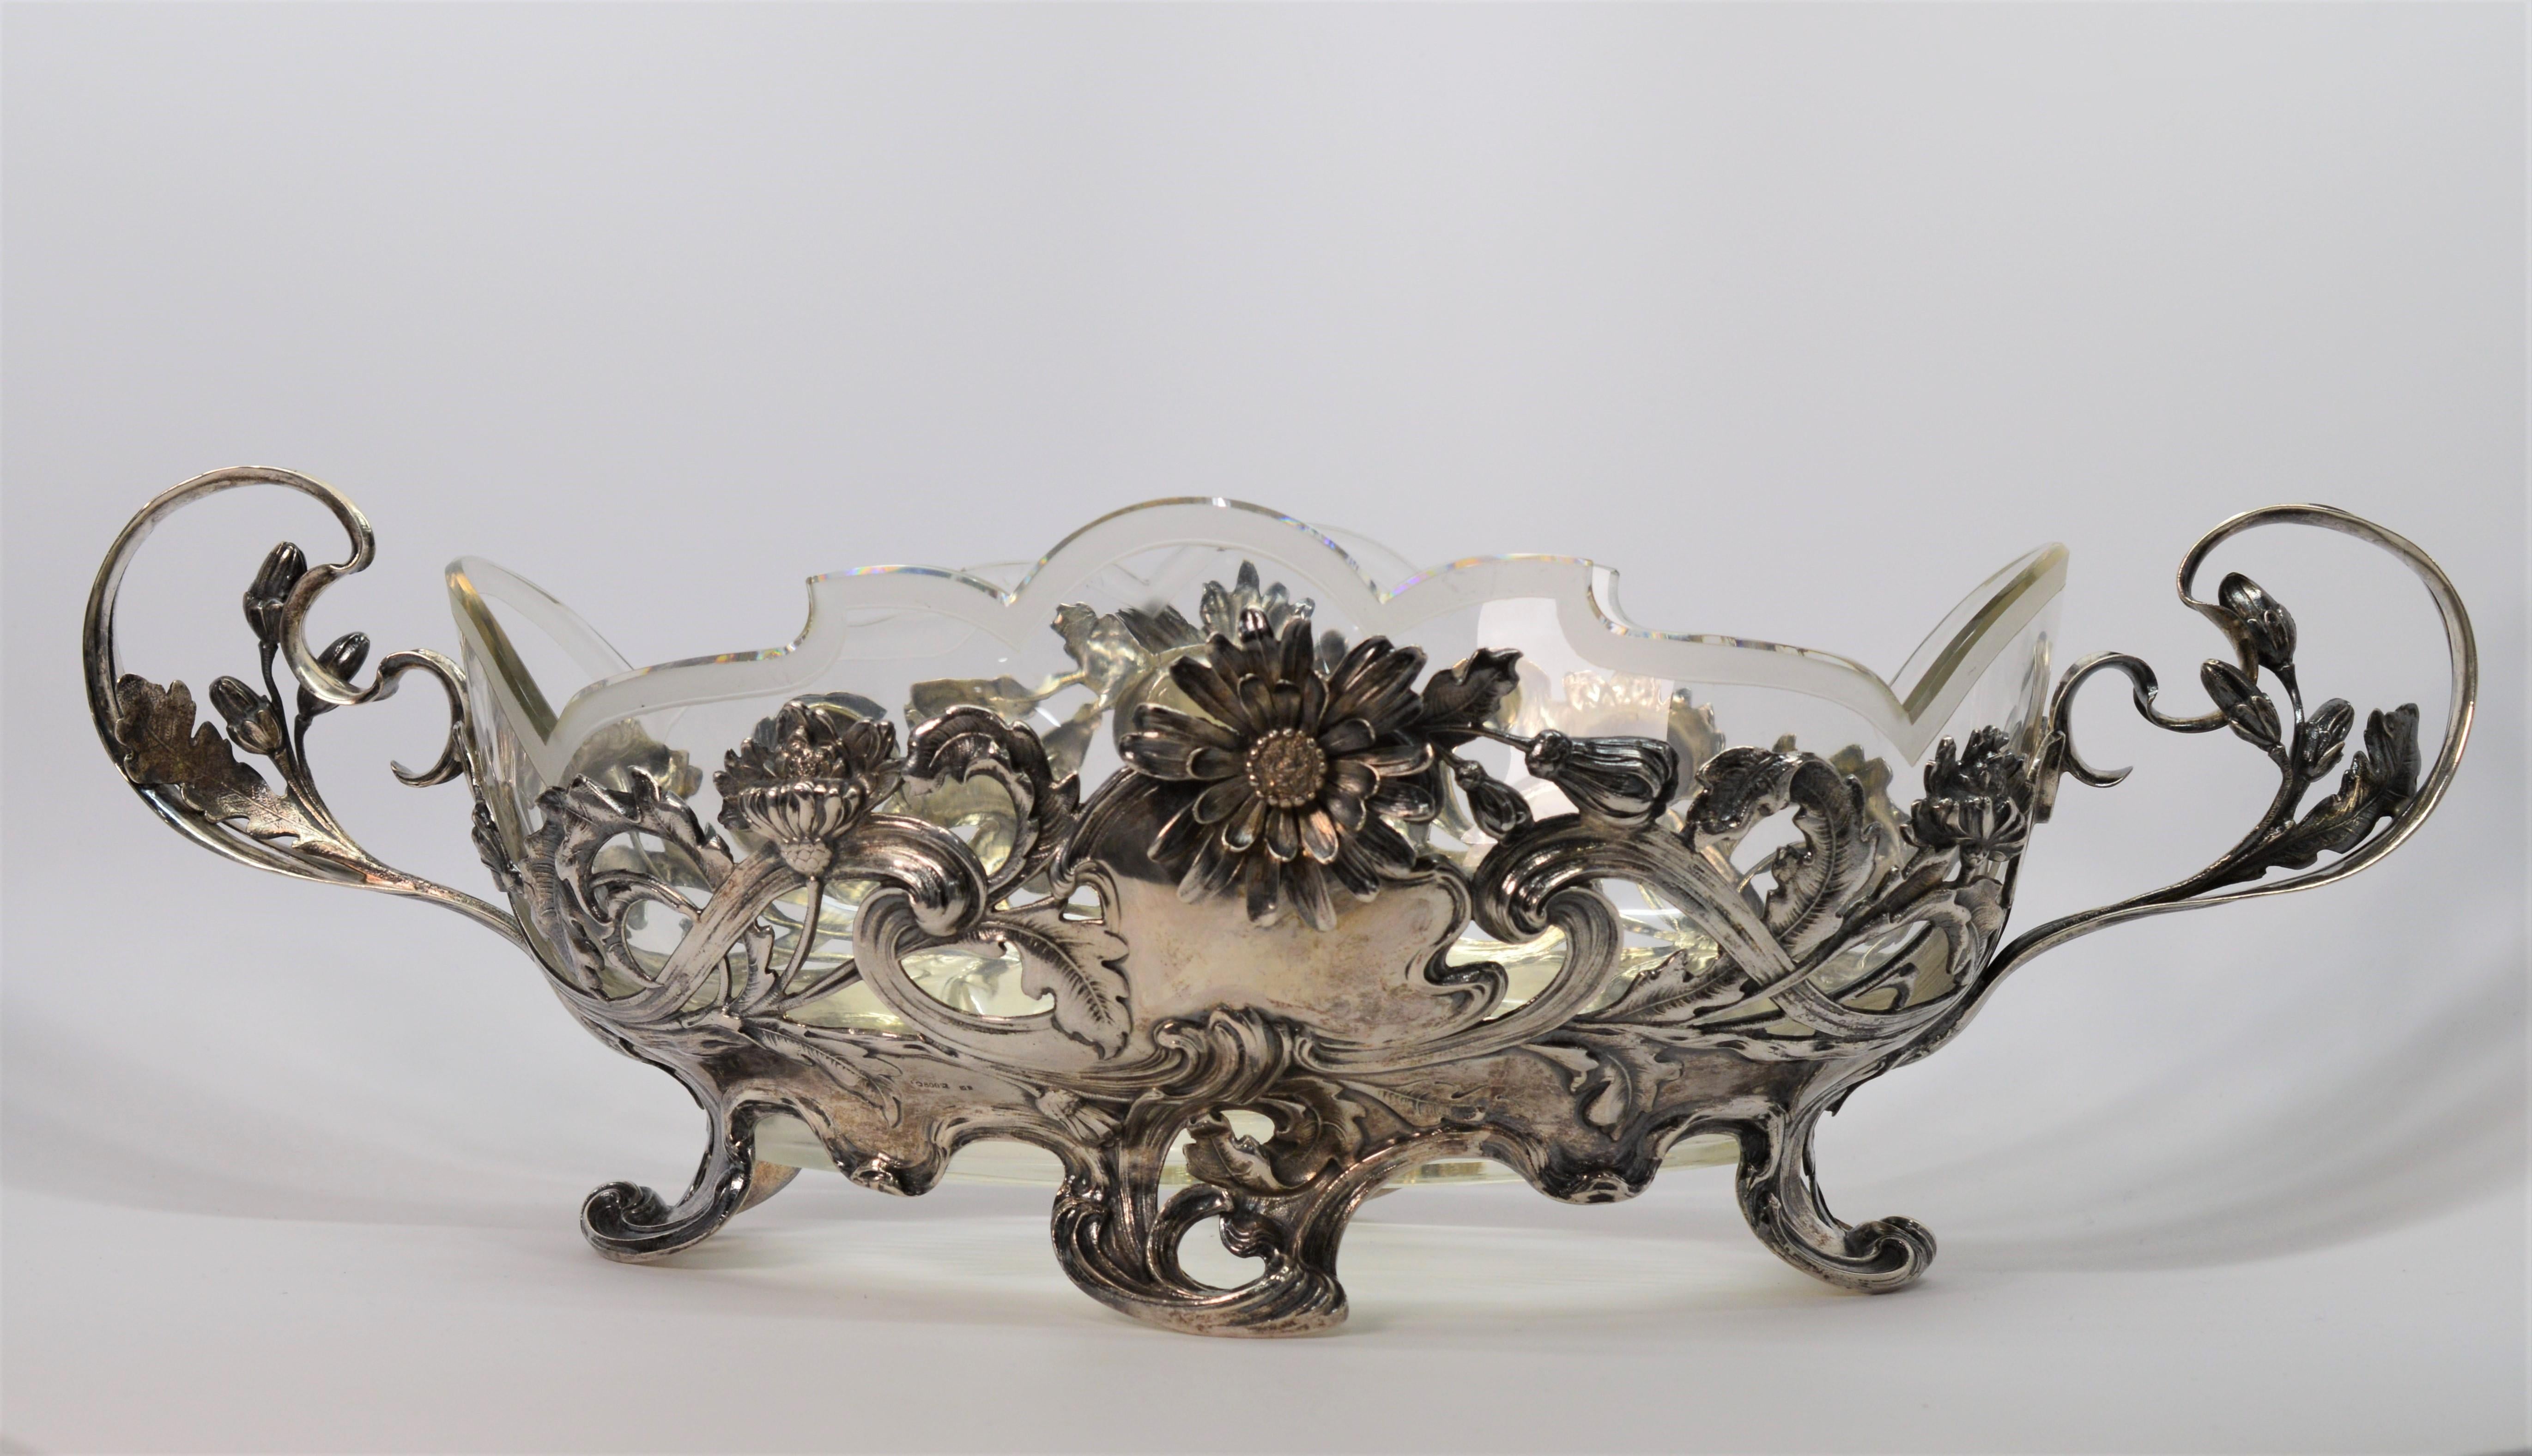 In ausgezeichnetem Zustand, ist diese exquisite Schale ein Kunstwerk mit seiner komplizierten floralen Ranken gemusterten Design getan ist .800 Deutsch Silber. 
Intact ist ein mattierter Bleiglaseinsatz, der eine vielseitige Verwendung ermöglicht.